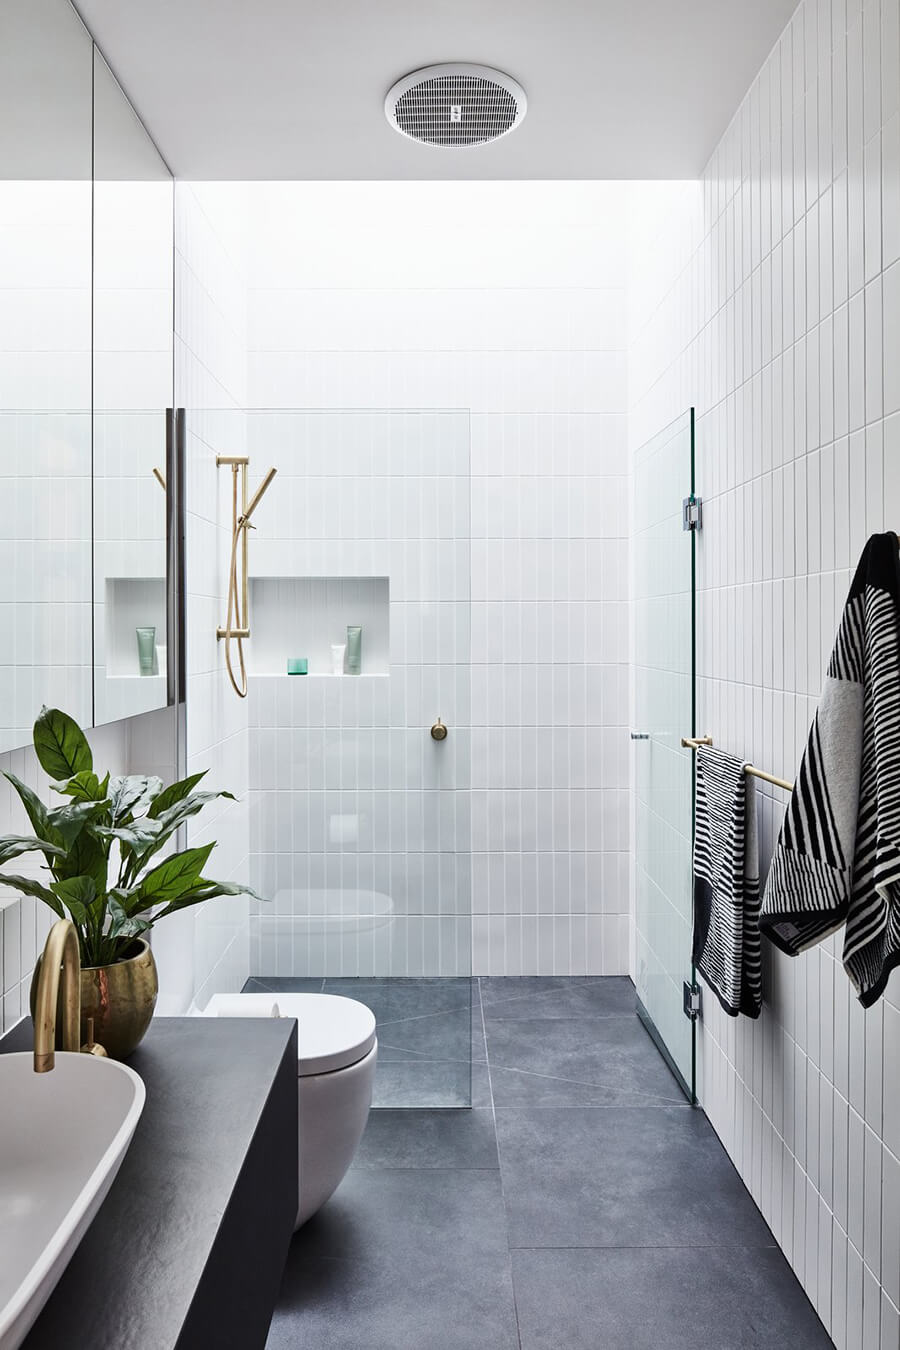 Un baño con mampara de ducha basculante, que se abre hacia fuera o hacia adentro de la ducha.